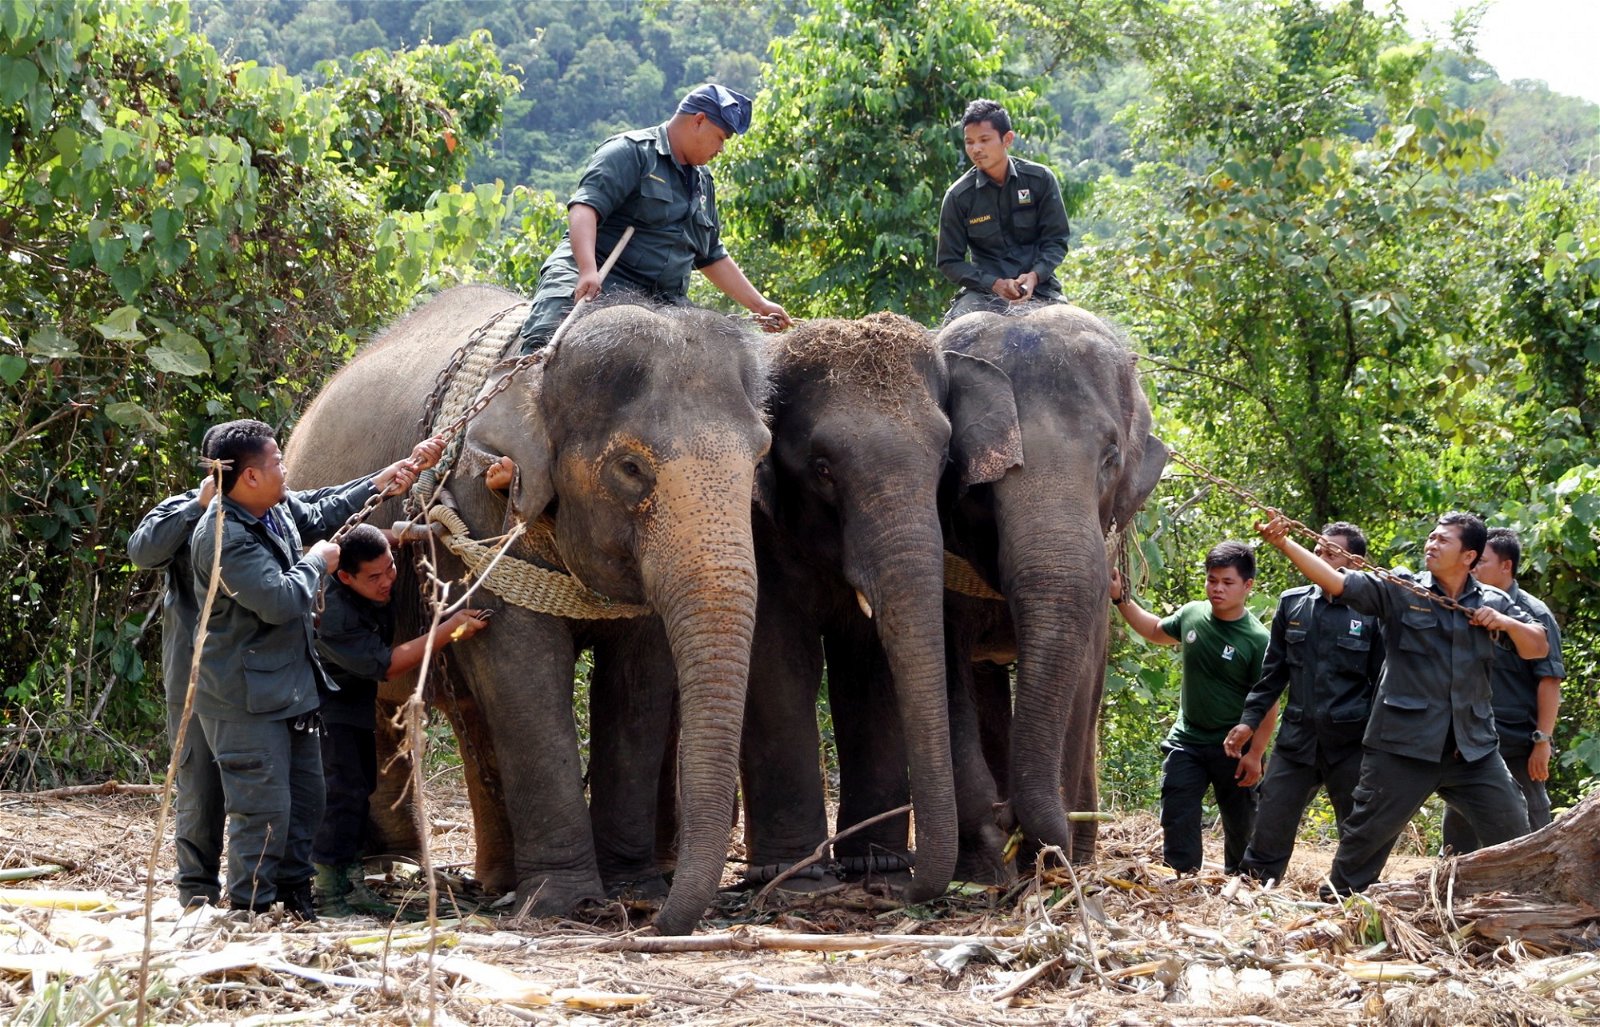 野生动物保护局官员左右骑著两头母象，正协助中间的公象返回原始森林内。